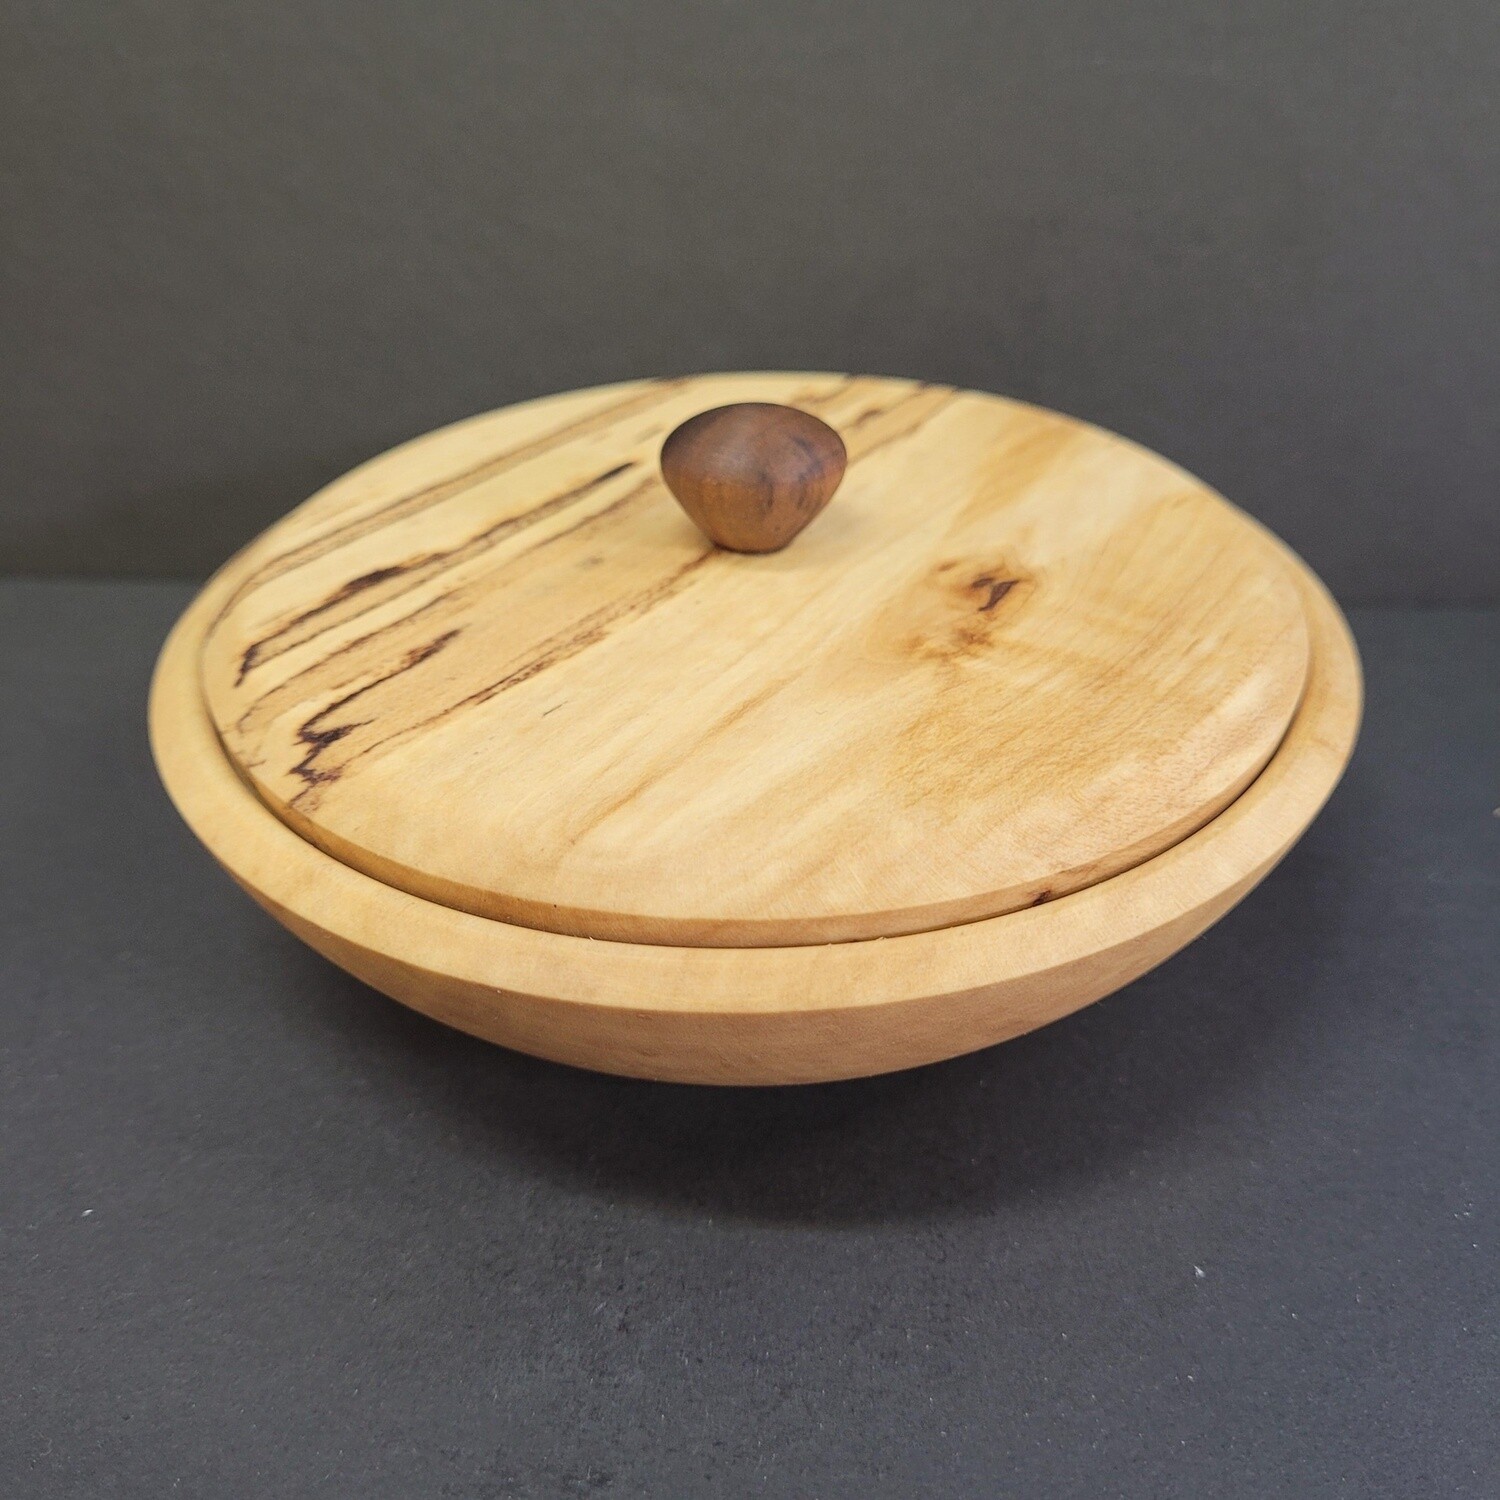 Small round applewood box with lid / Petite boite ronde en bois de pommier avec couvercle